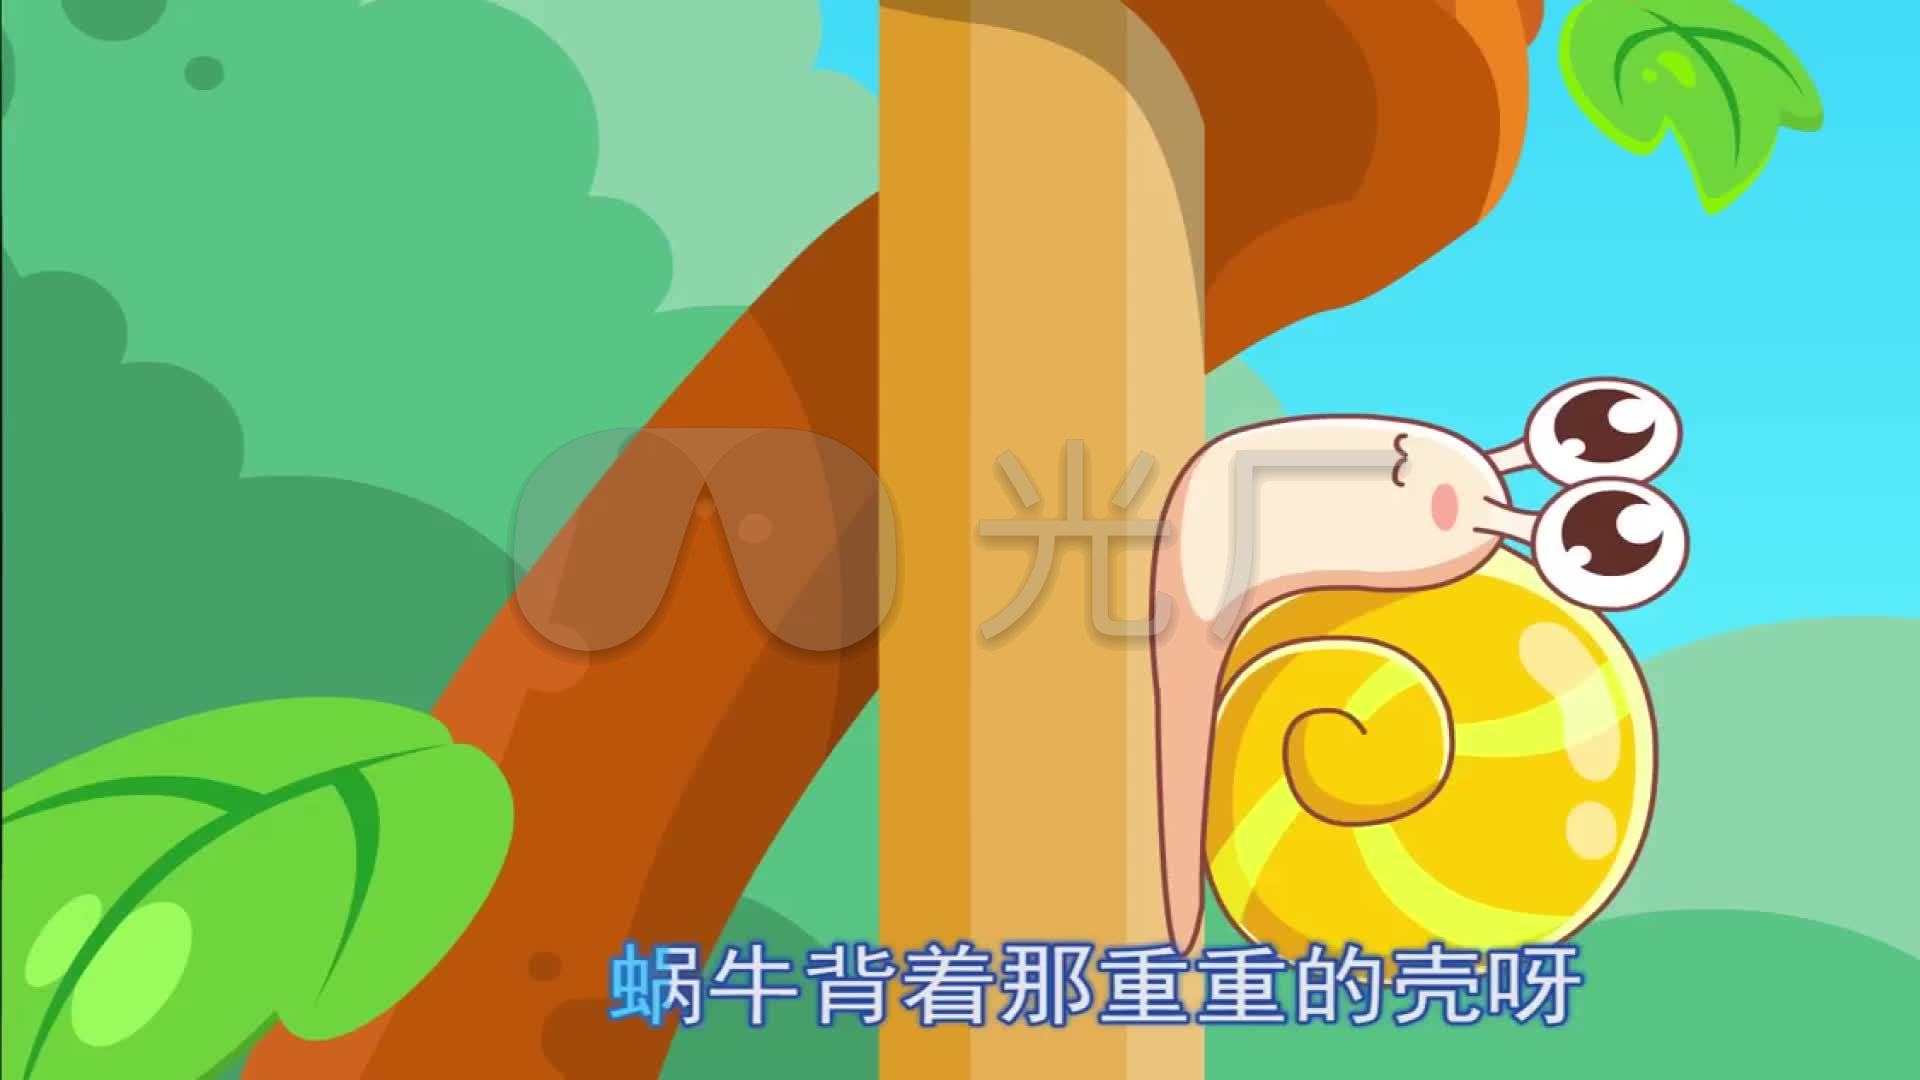 蜗牛与黄鹂鸟卡通动画儿童歌曲演出led晚_192